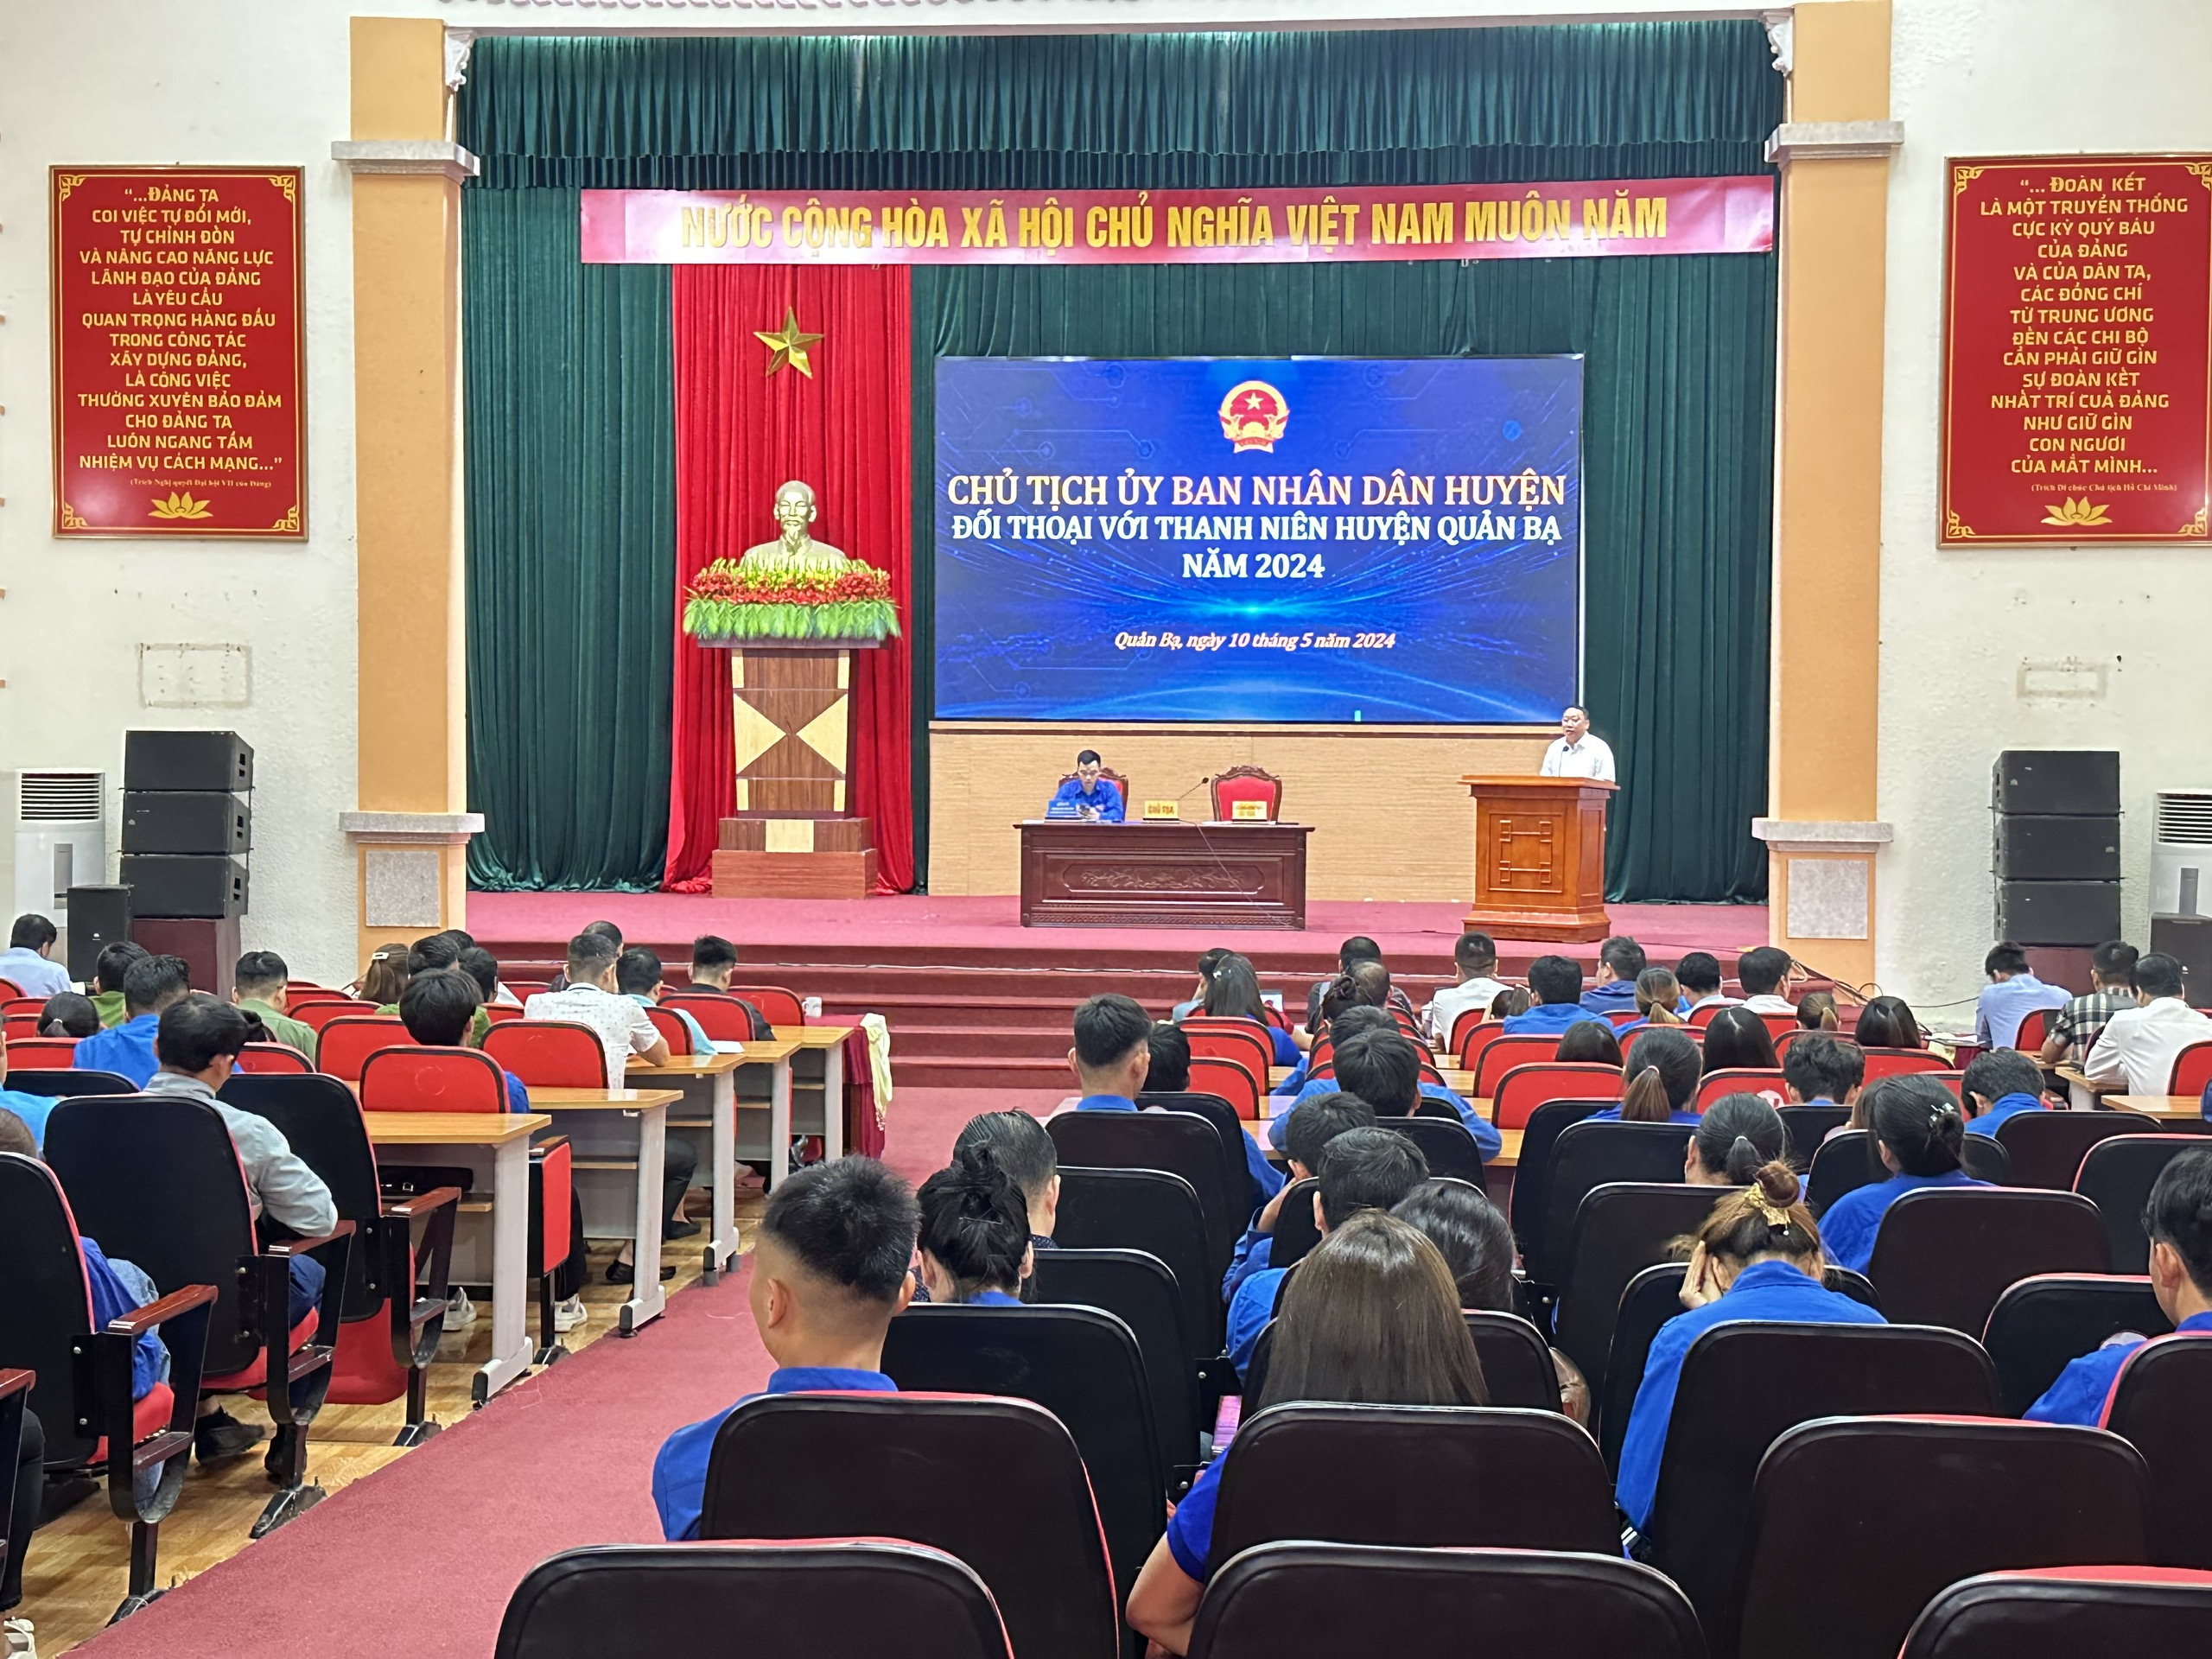 Chủ tịch UBND huyện Hạng Dương Thành đối thoại với Thanh niên năm 2024